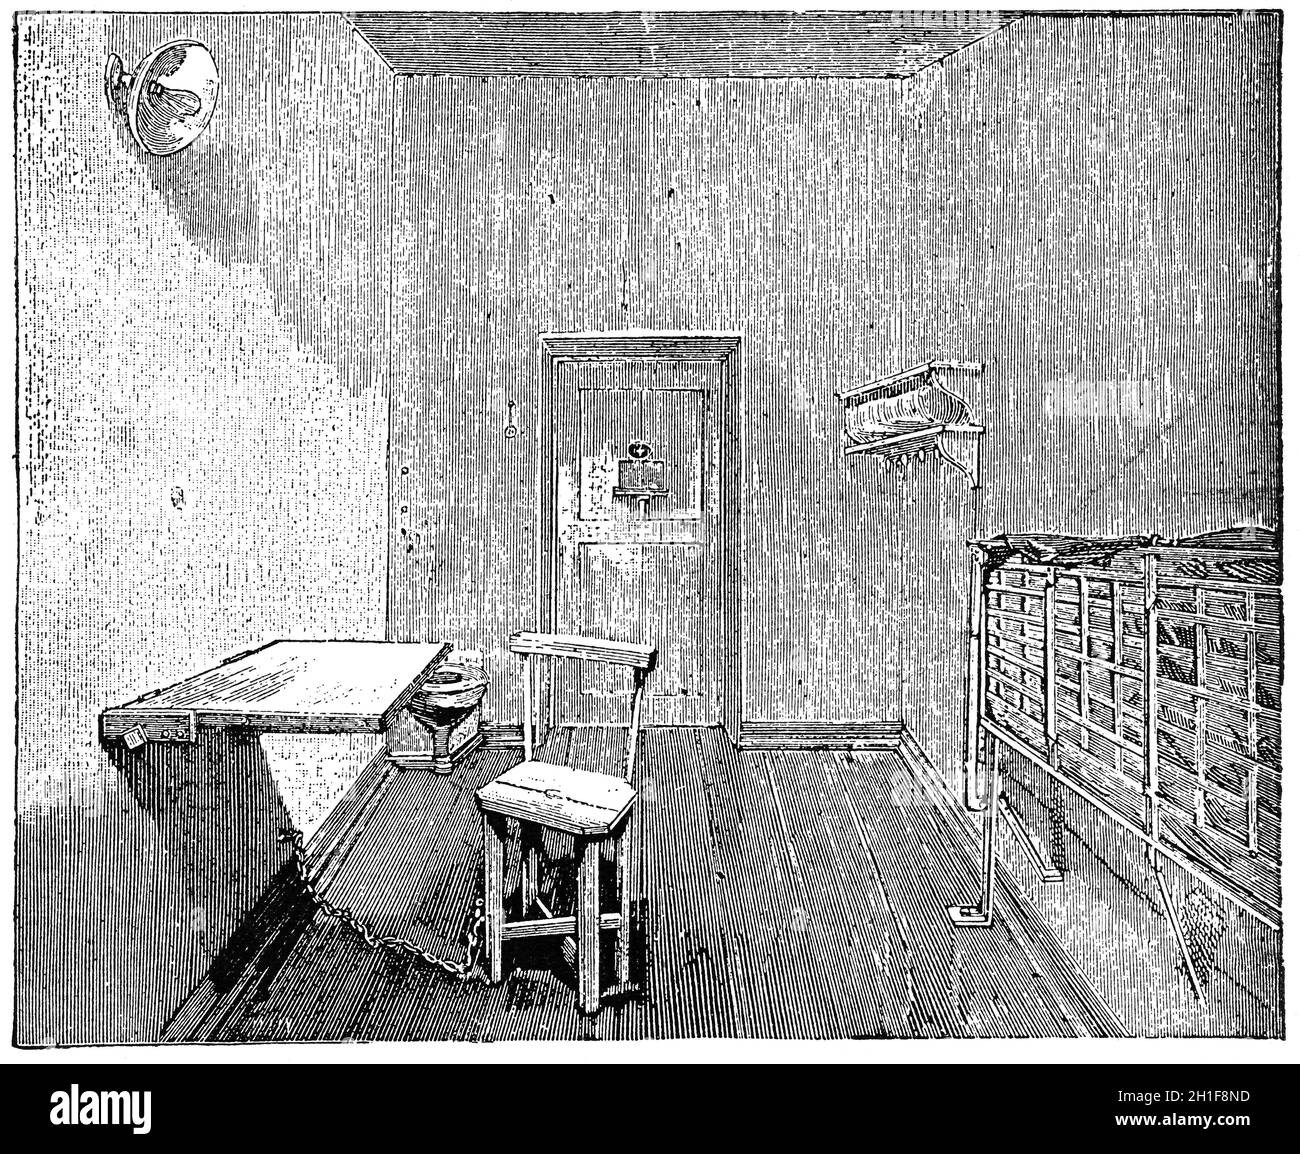 Cellule de prison solitaire (1898). Illustration du XIXe siècle. Fond blanc. Banque D'Images